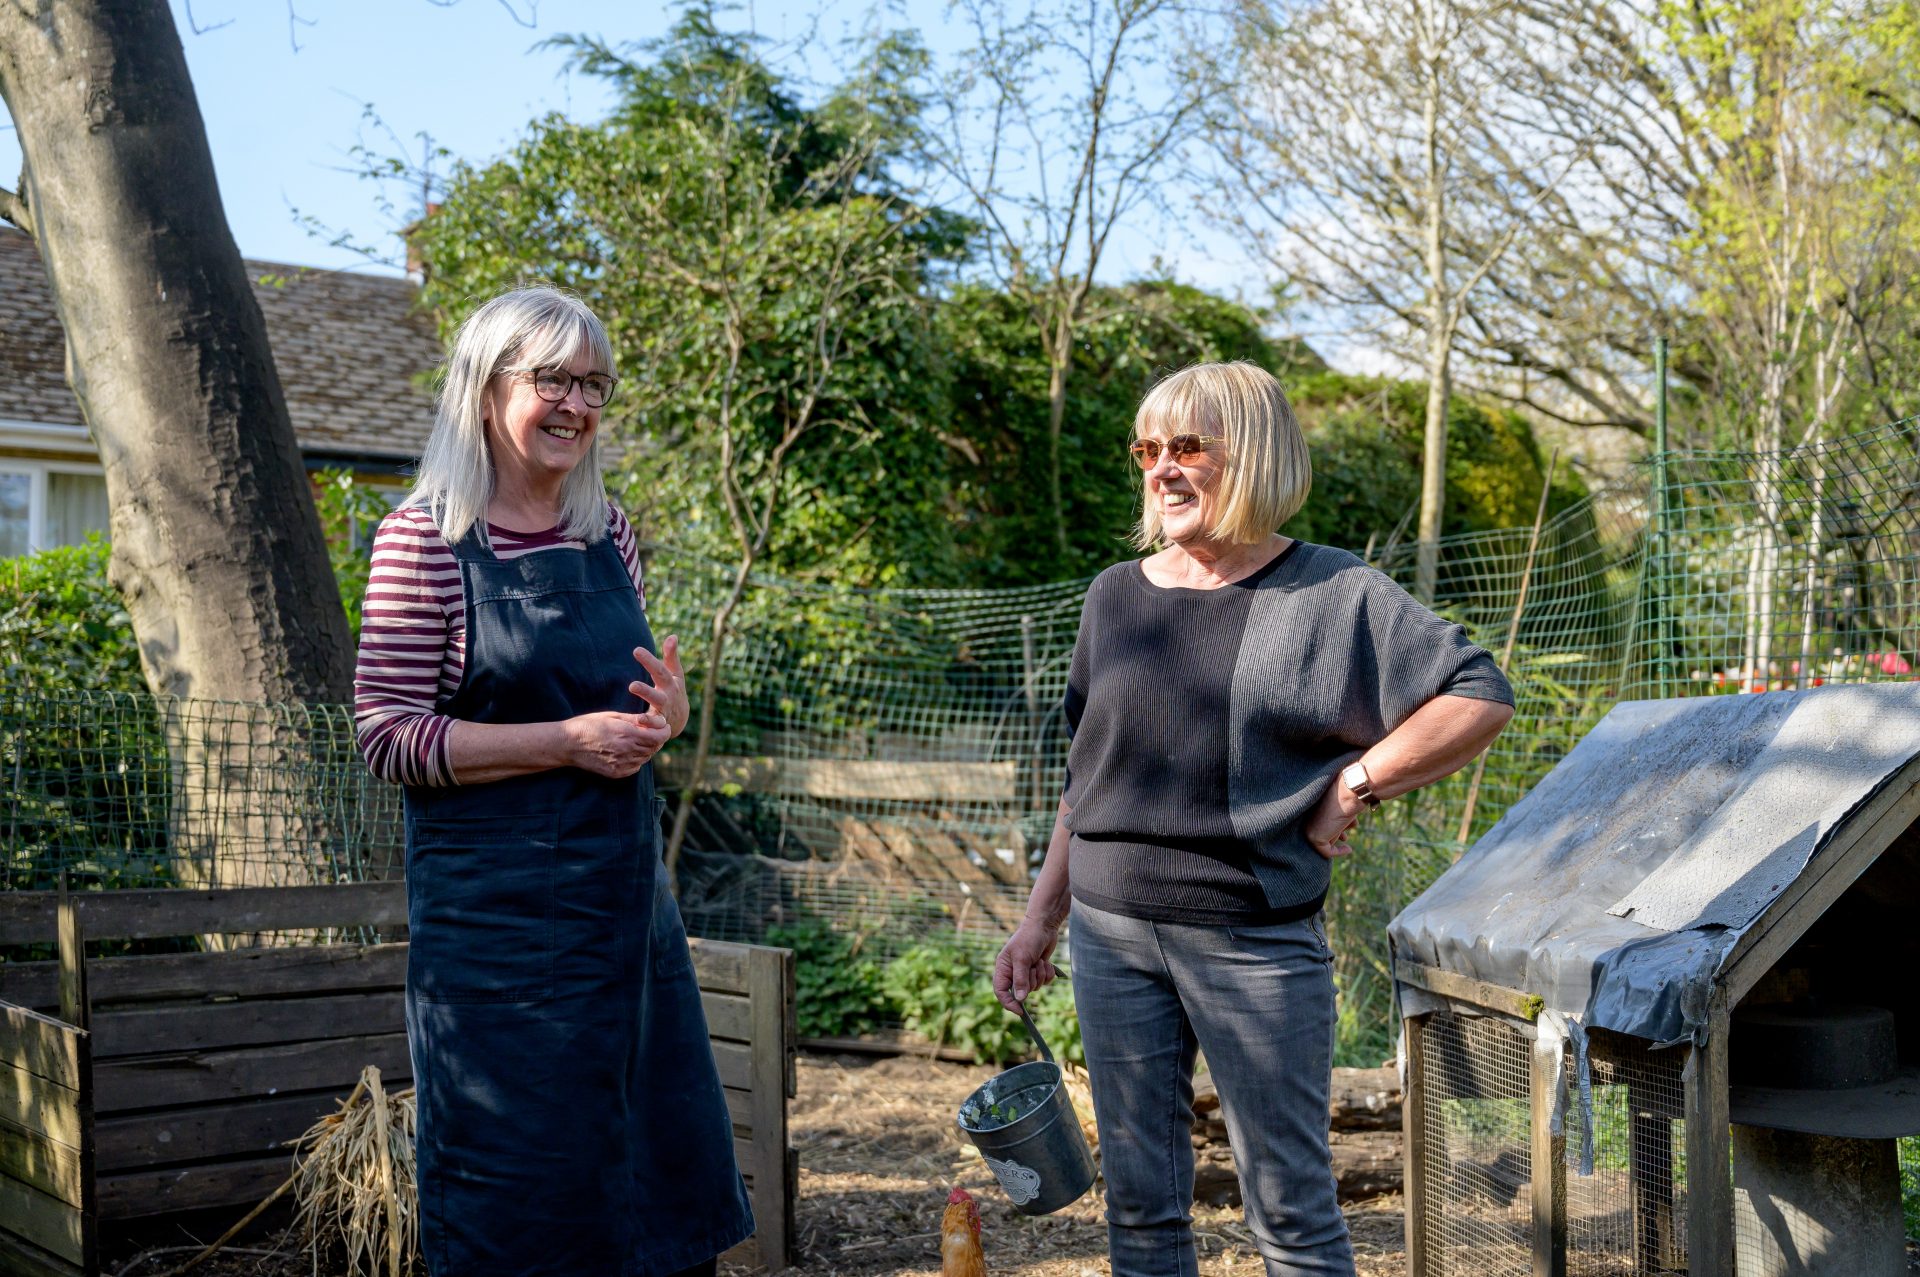 Zwei ältere Frauen stehen in einem Garten in der Sonne und unterhalten sich lachend.